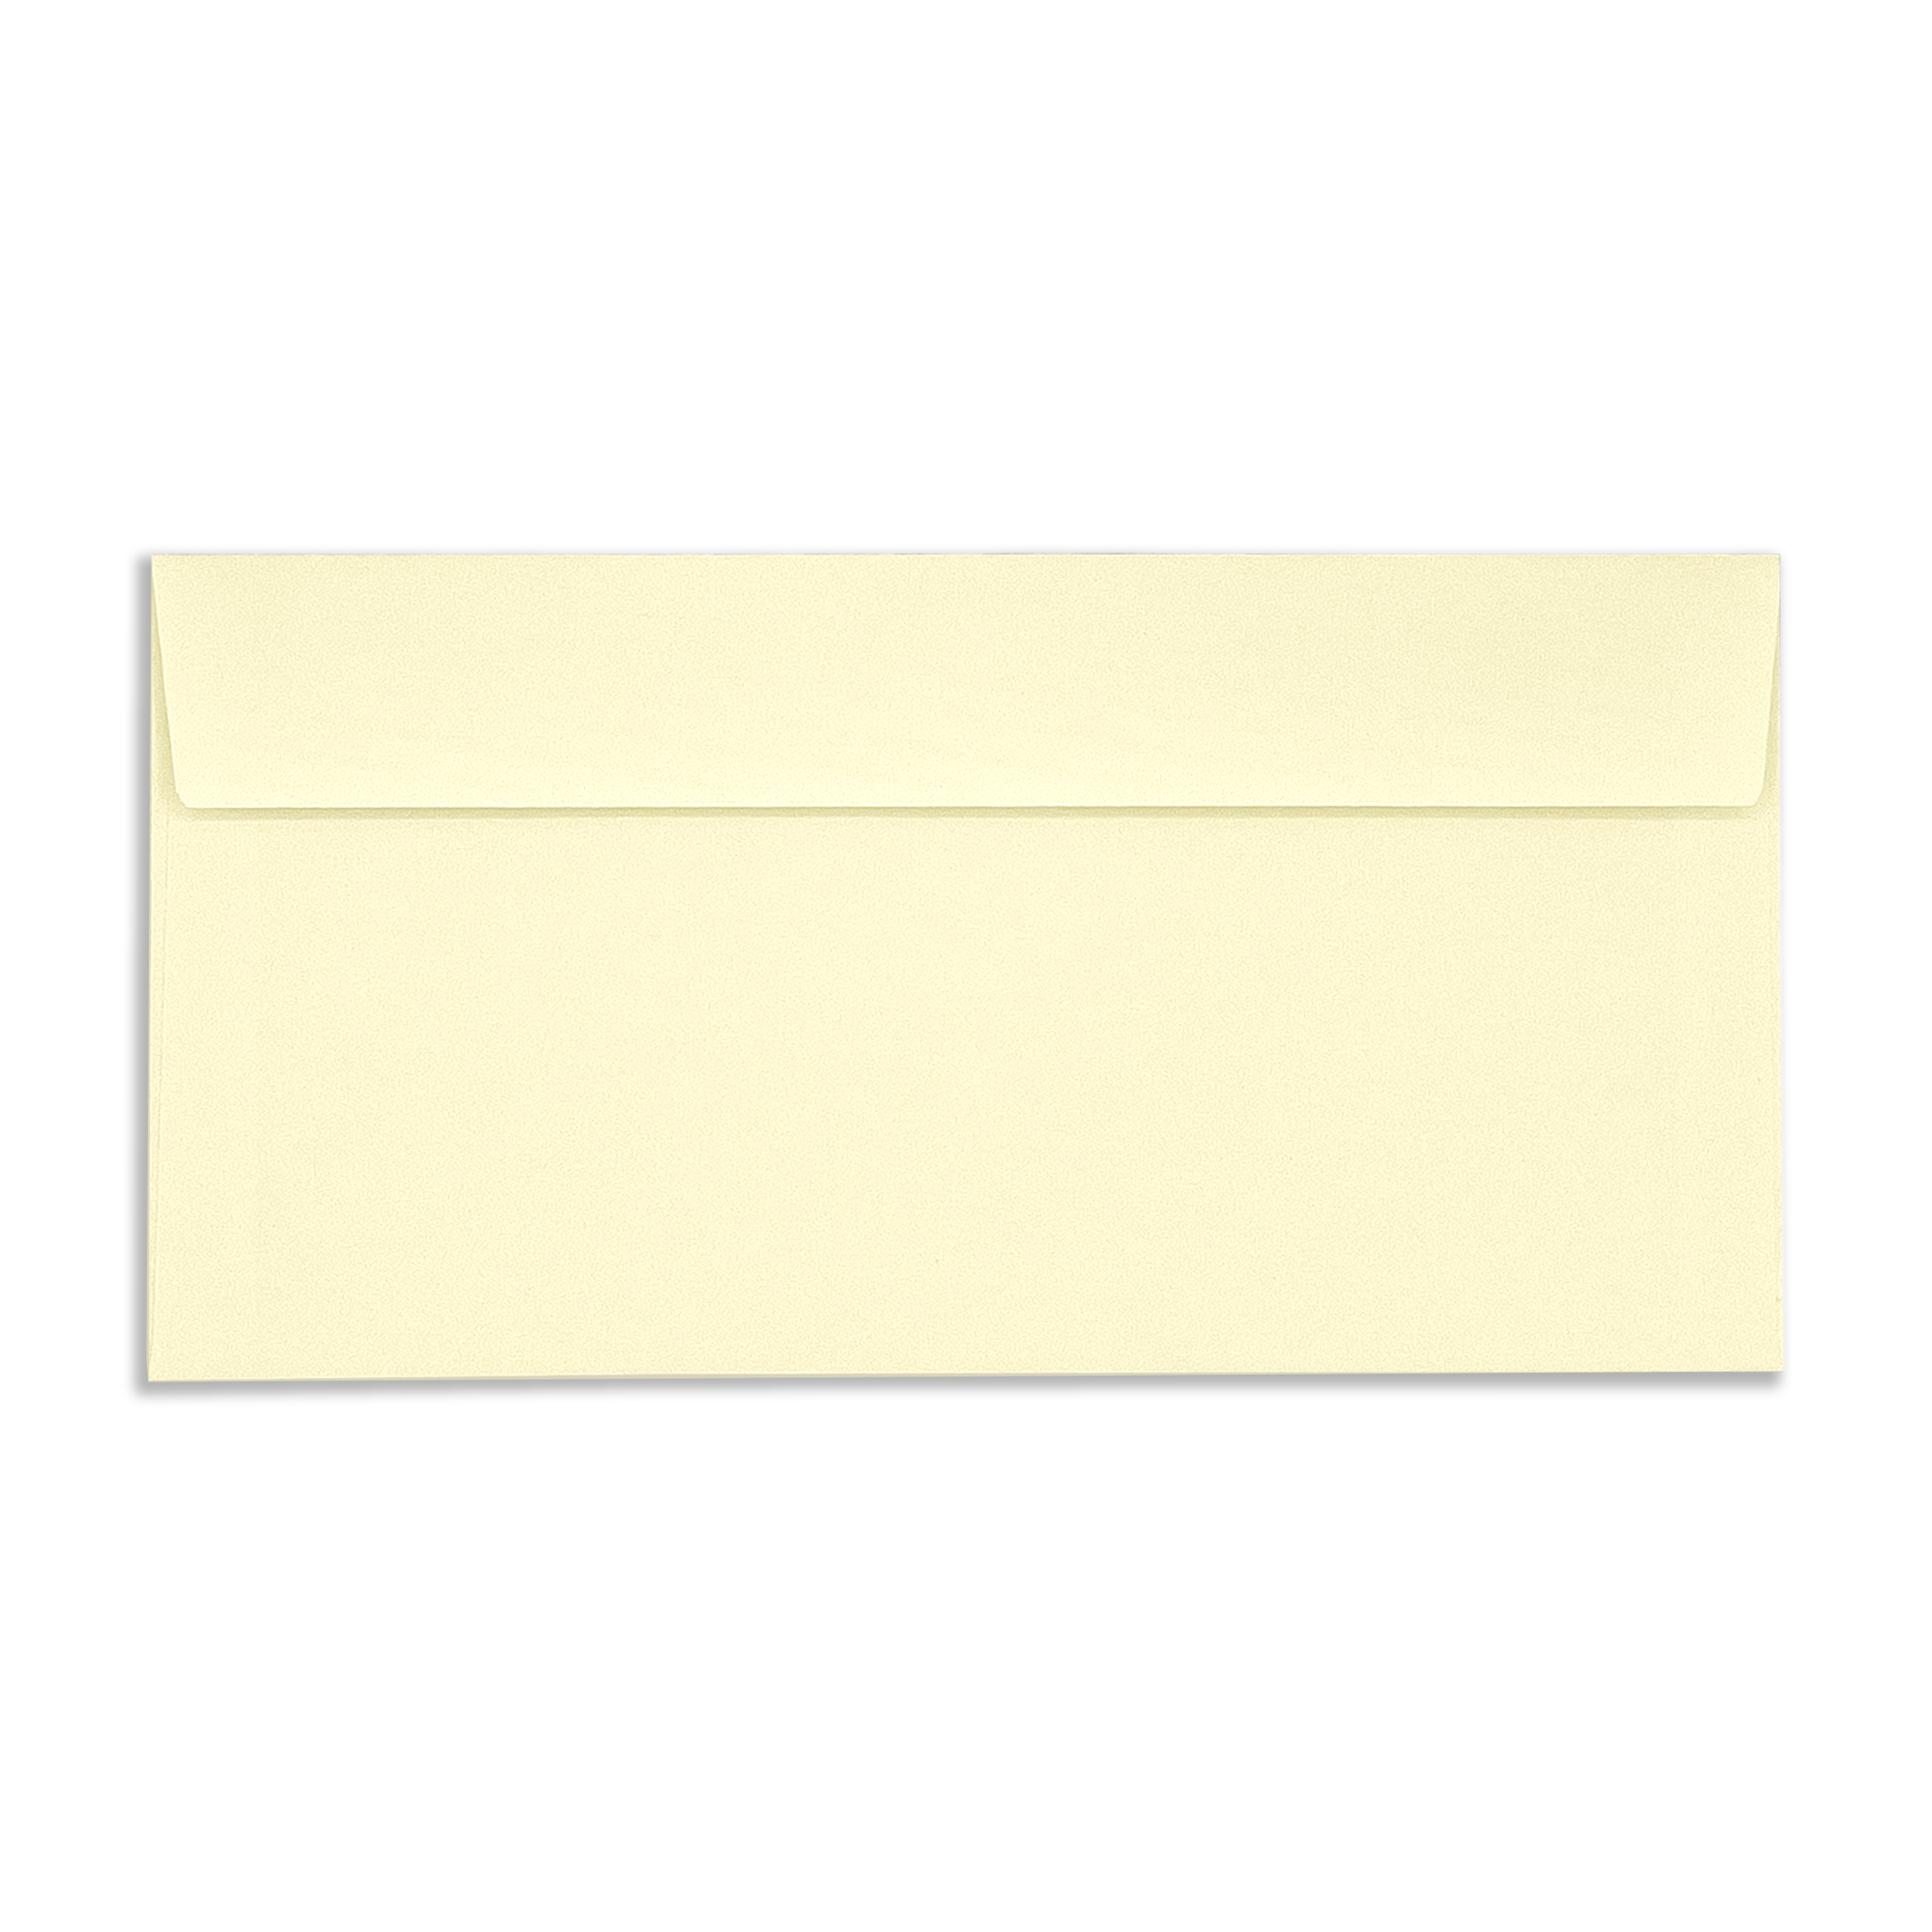 DL-window-vellum-wove-120gsm-wallet-envelopes-flap